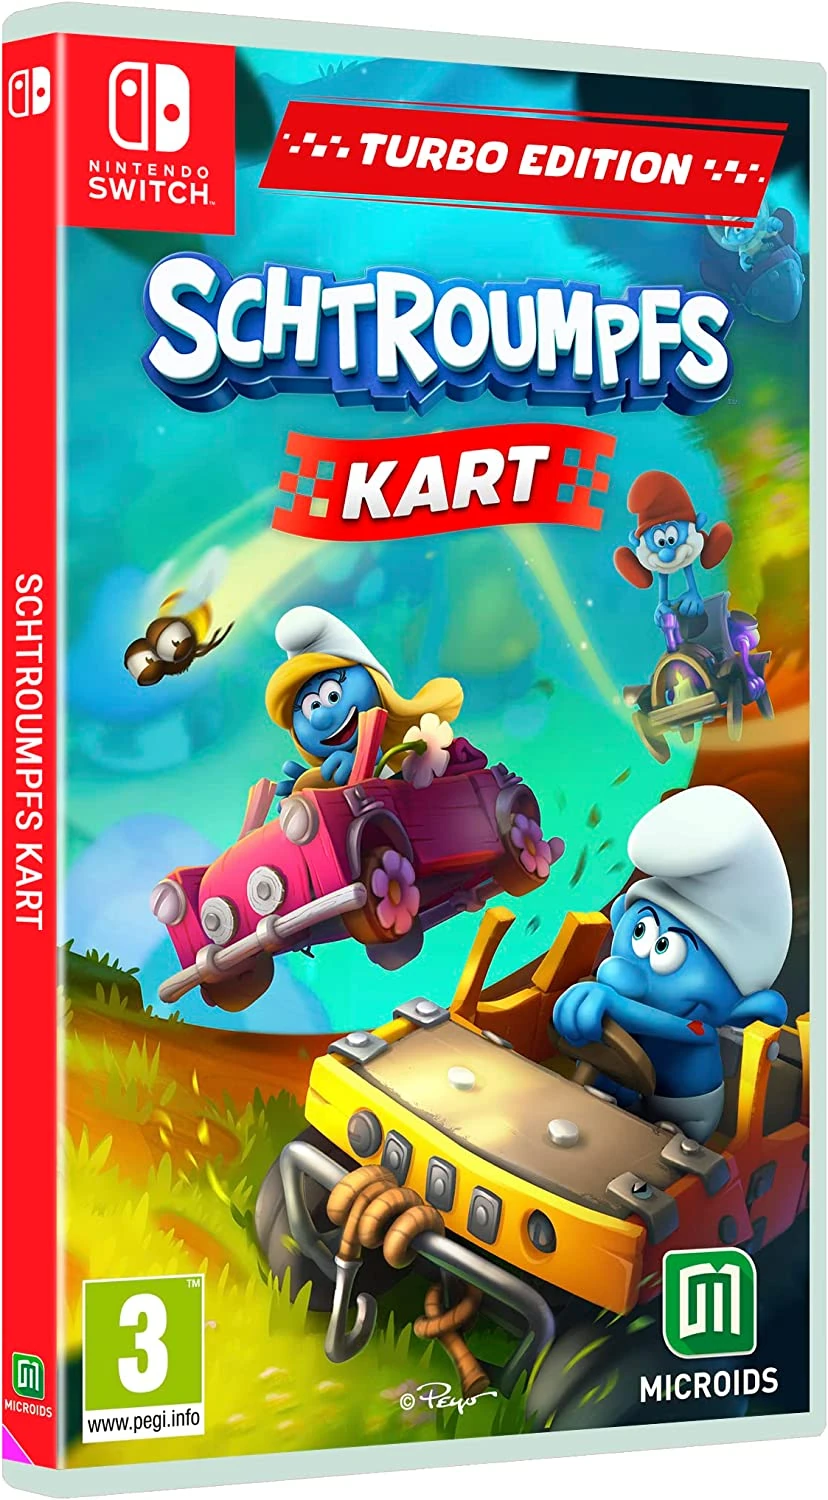 Schtroumpfs Kart - Turbo Edition